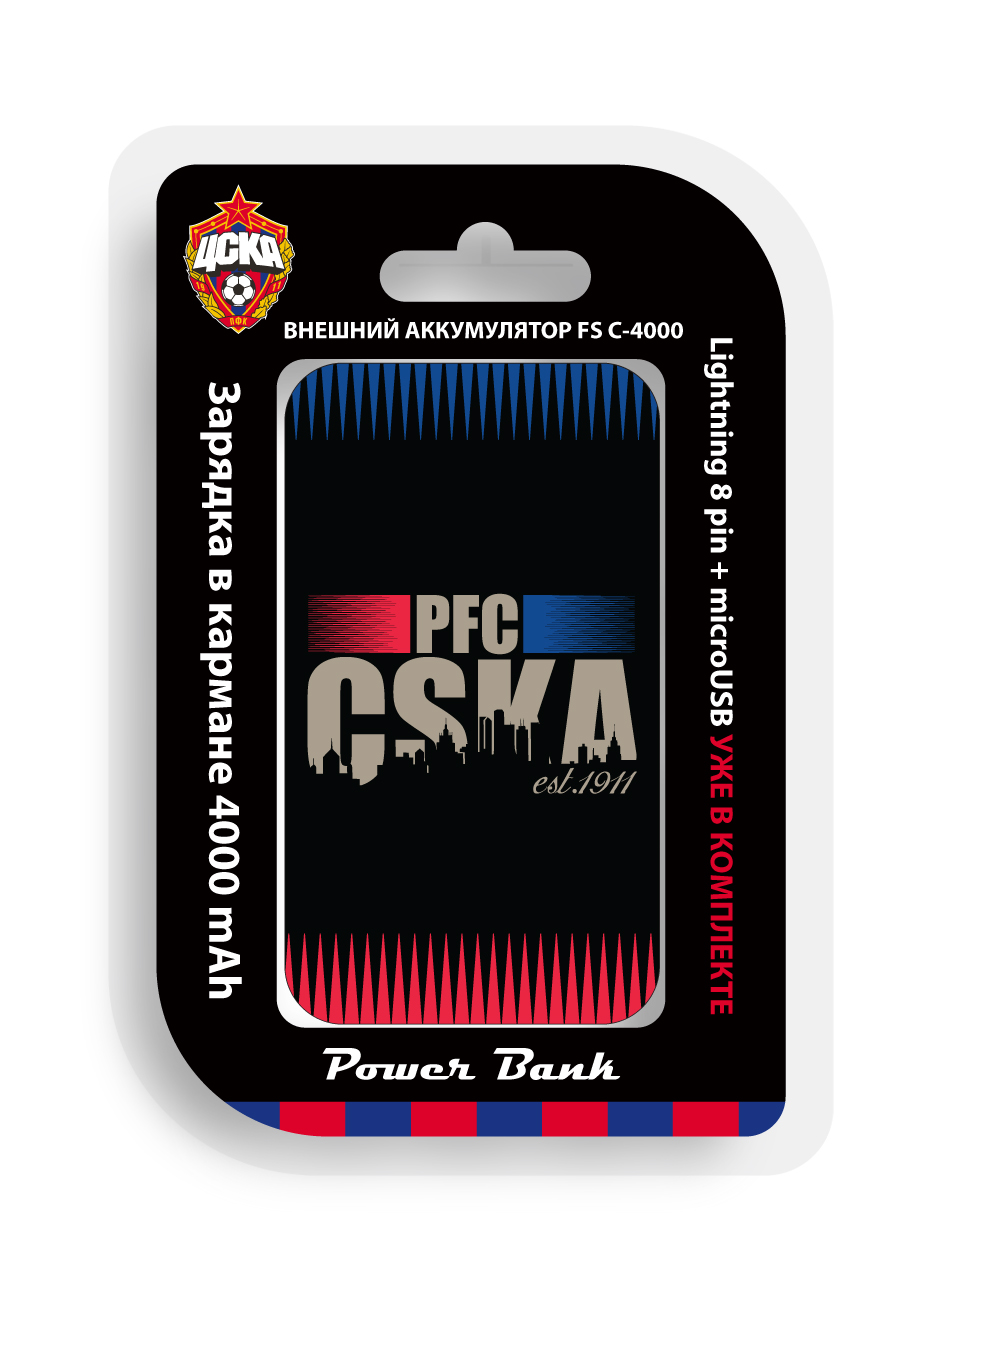 Внешний аккумулятор PFC CSKA от Cskashop